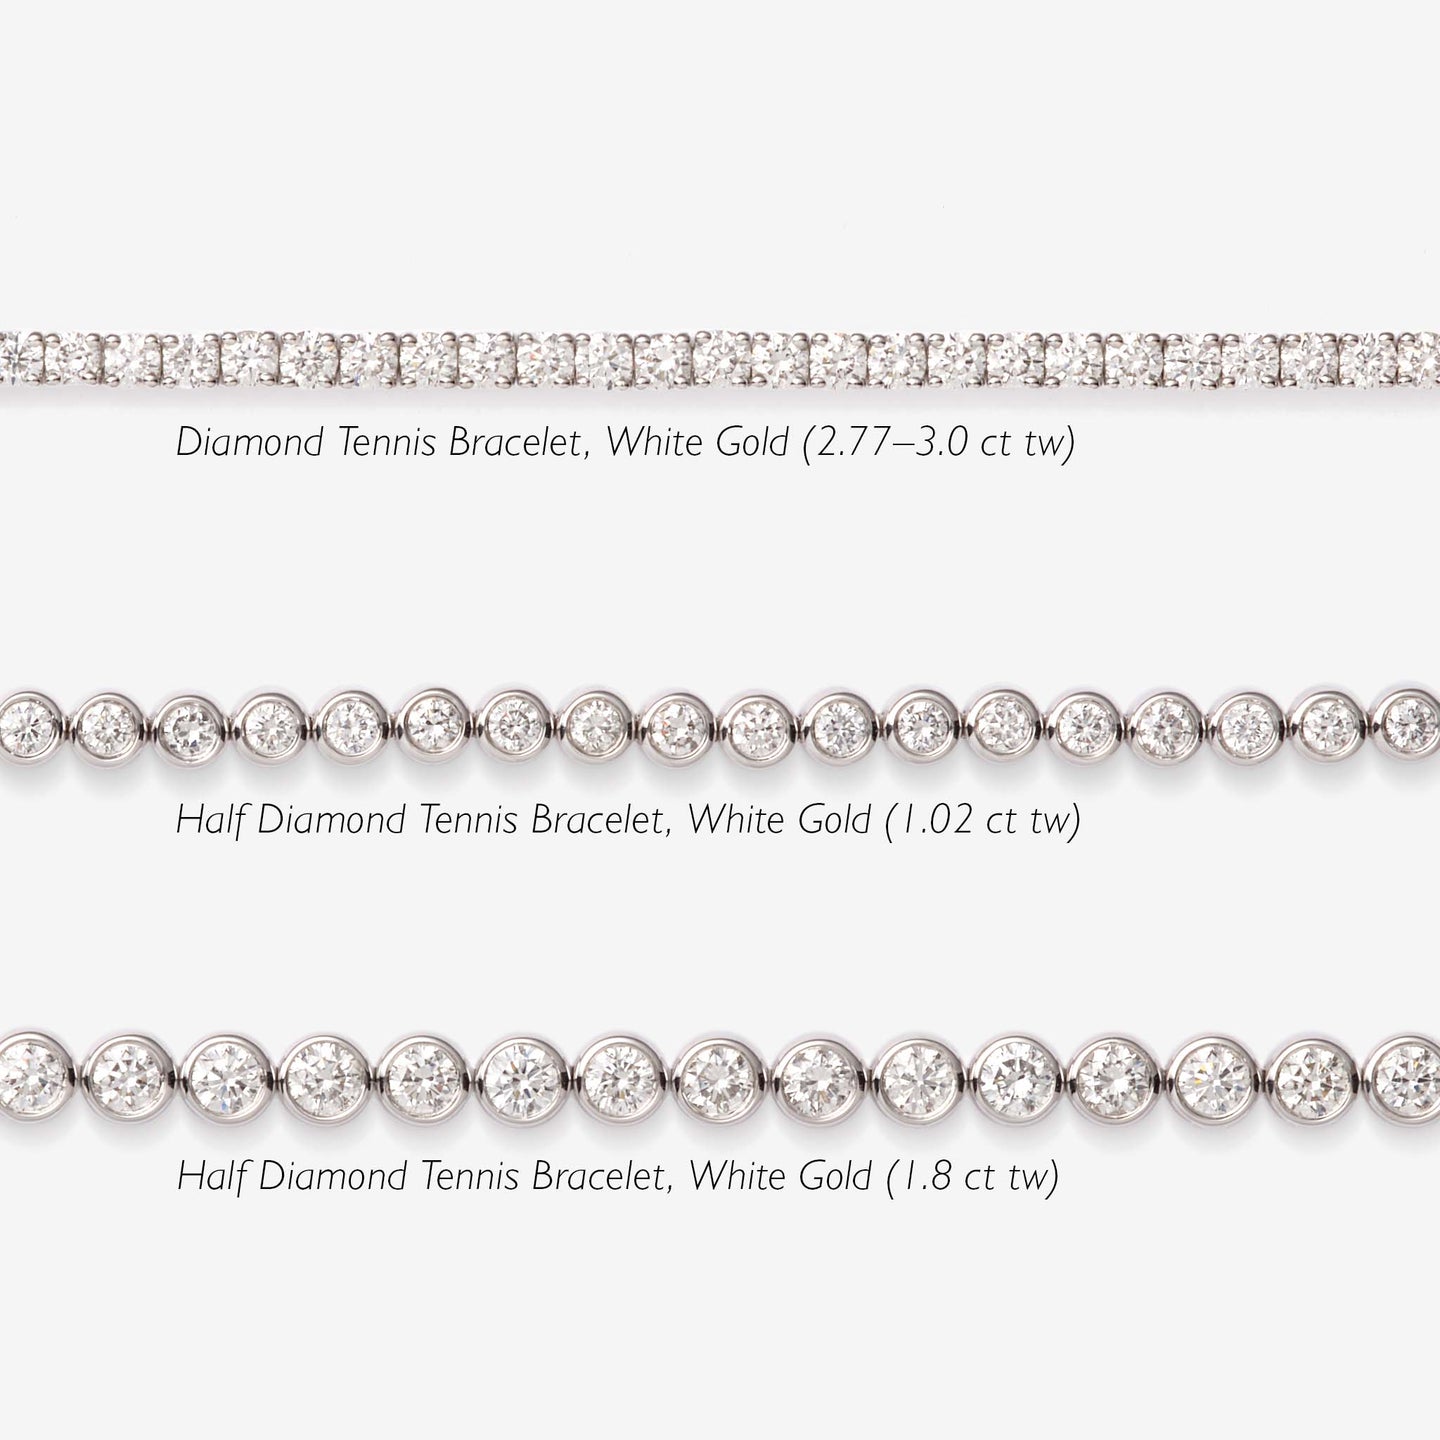 Diamond Tennis Bracelet 14k White Gold (3.0 ct tw, 7 inches)